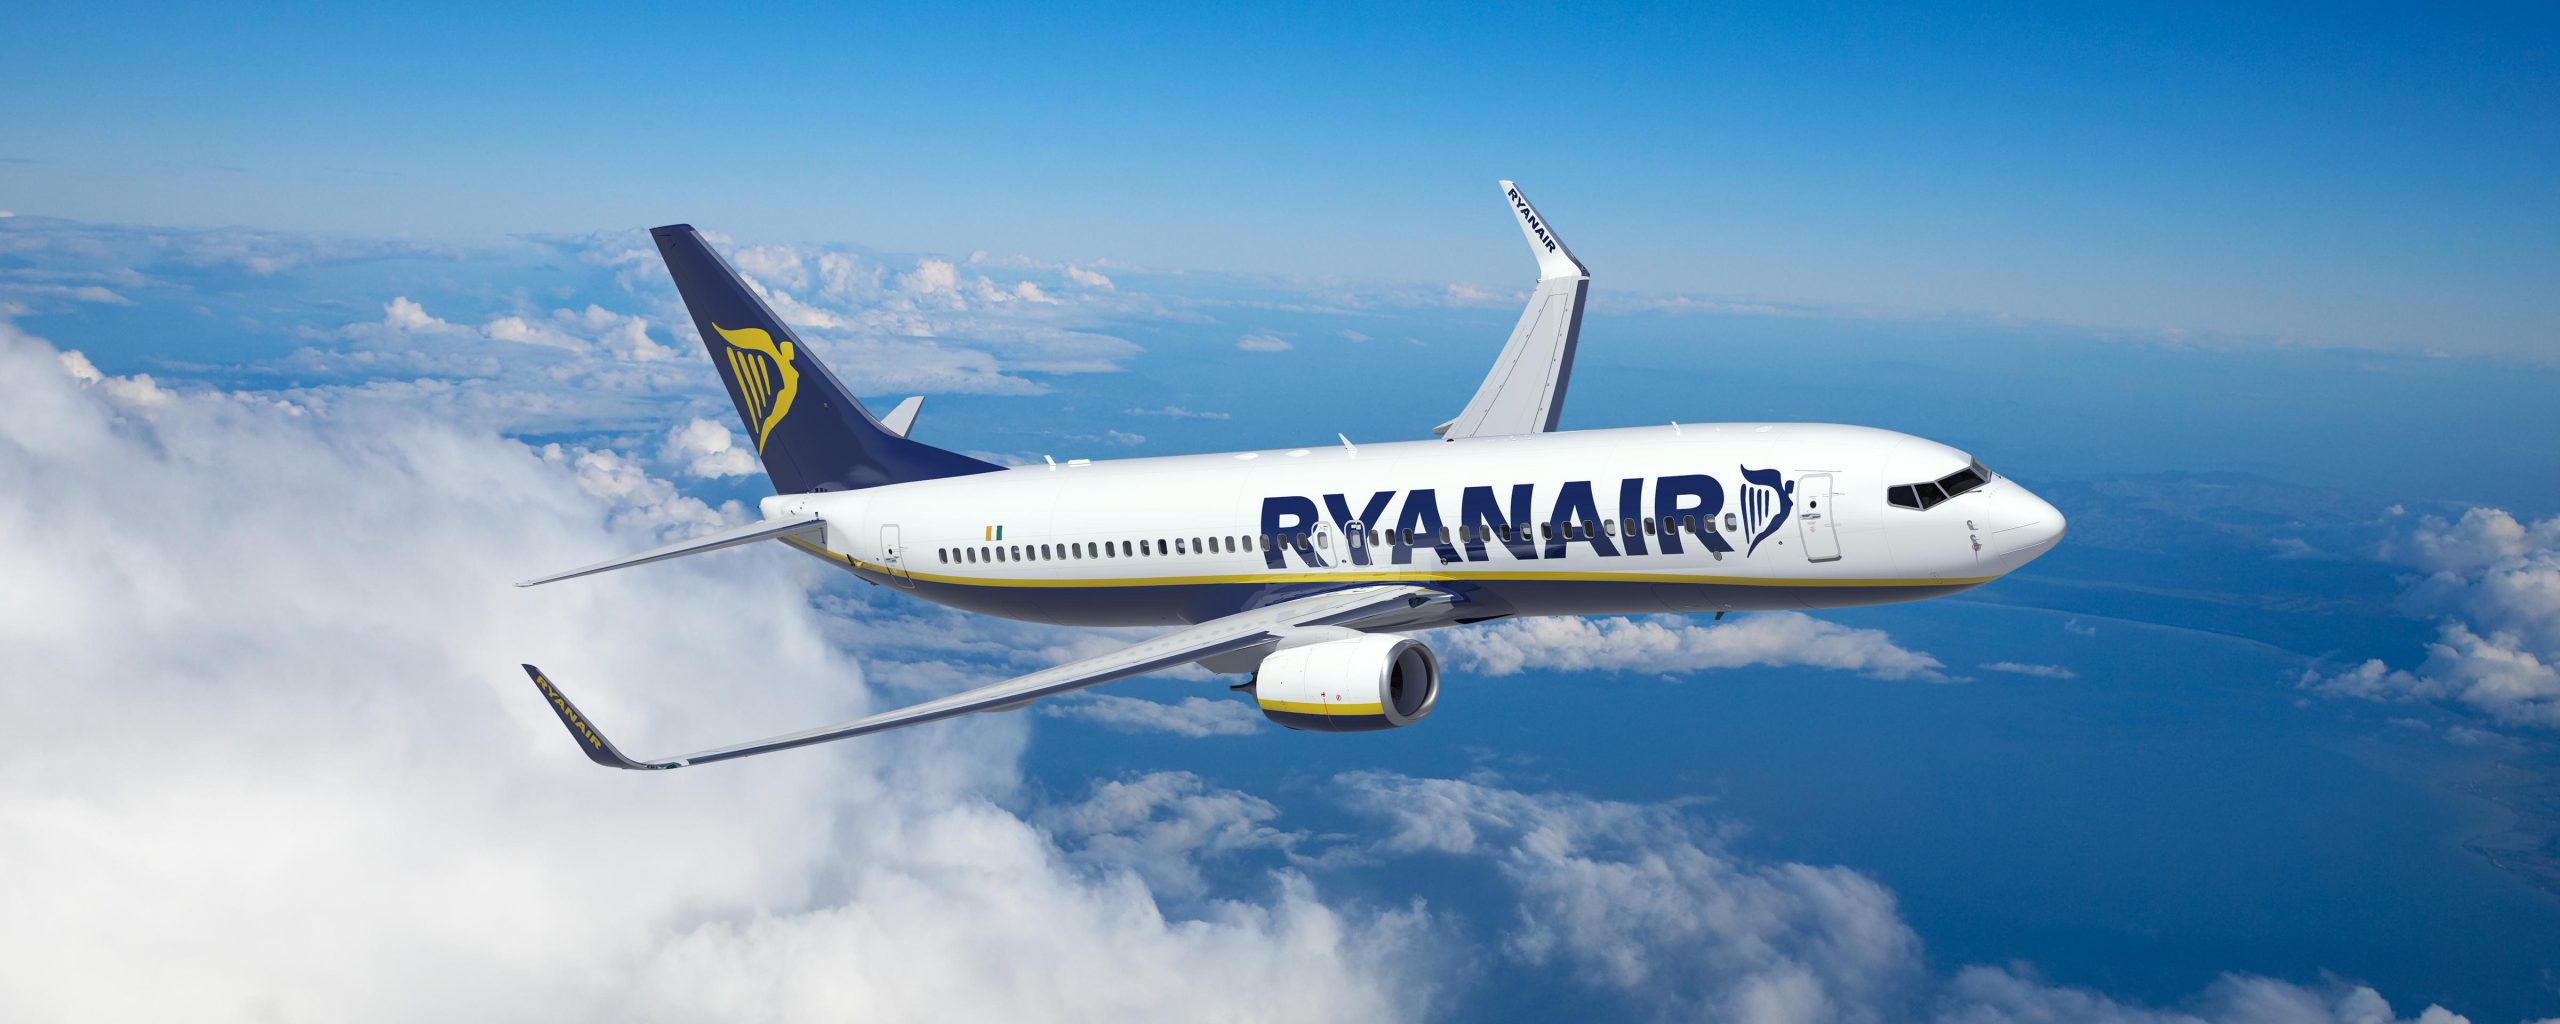 Ανησυχεί η Ryanair για τις ελλείψεις από τις στάσεις εργασίας των ελεγκτών εναέριας κυκλοφορίας